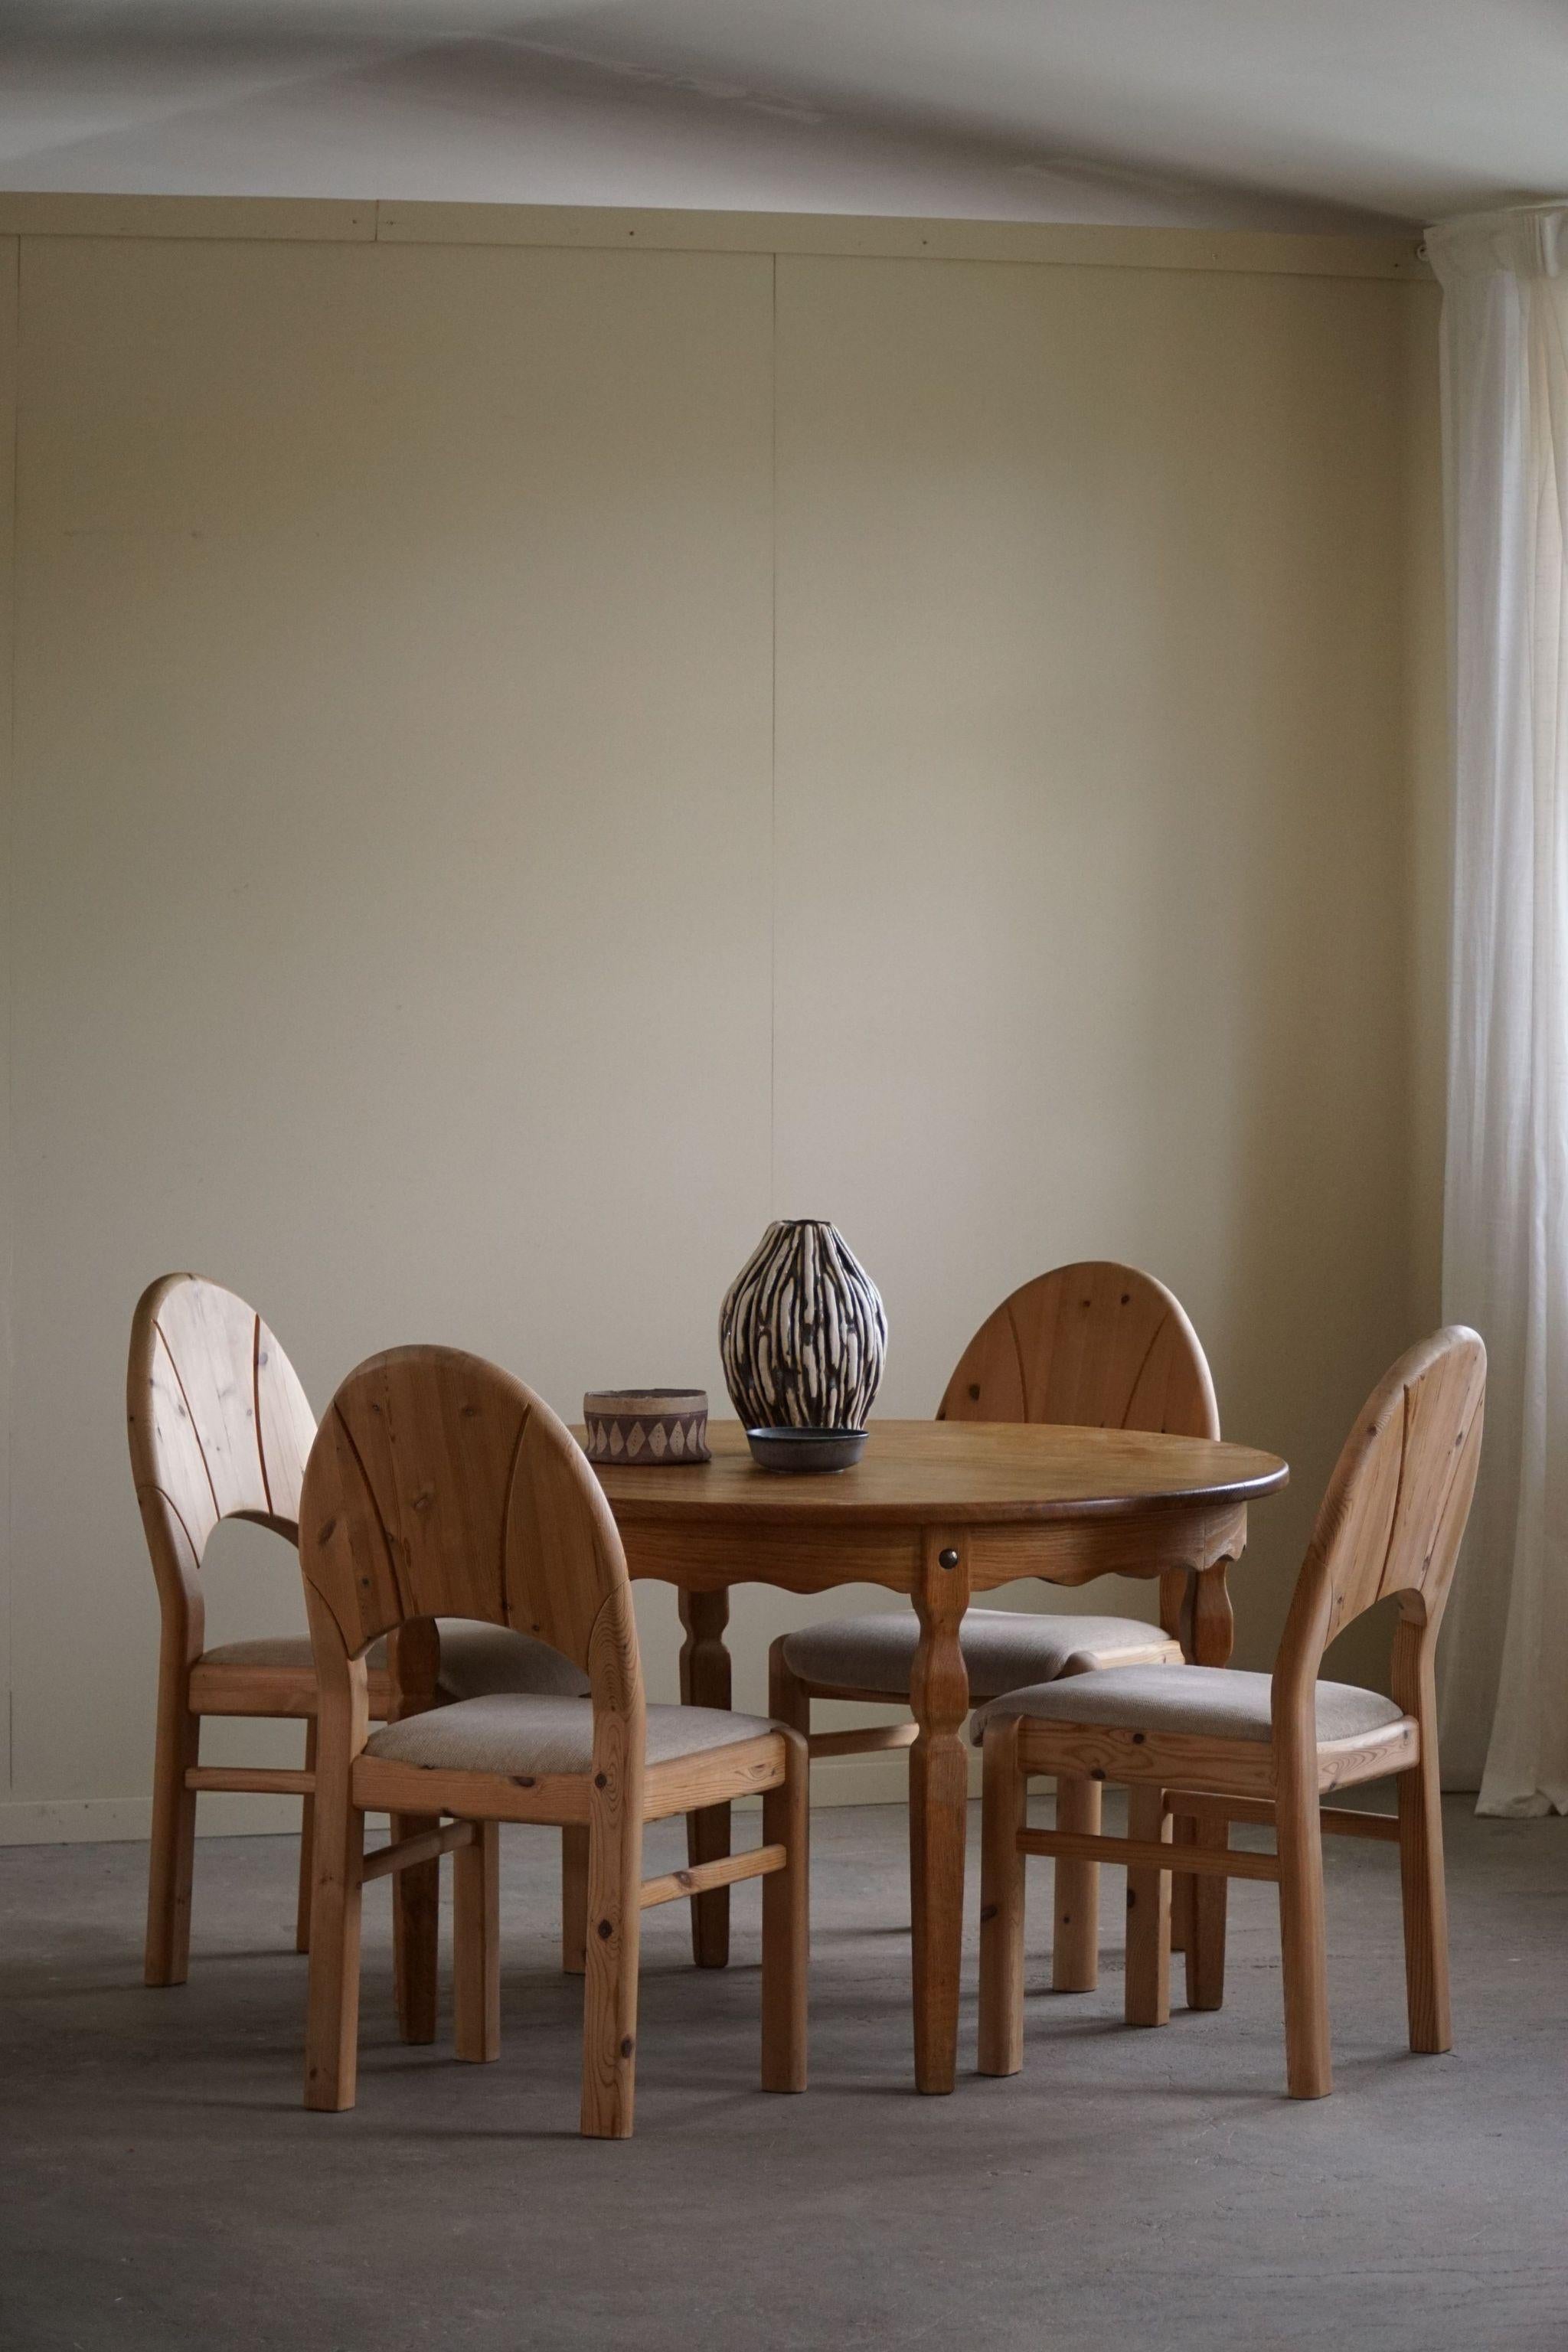 Table de salle à manger ronde classique en chêne massif avec deux rallonges, fabriquée dans les années 1960 à Rosengaarden, au Danemark. Estampillé en dessous. Une figure sculpturale pour un intérieur moderne.

Cette table brutaliste est dotée de